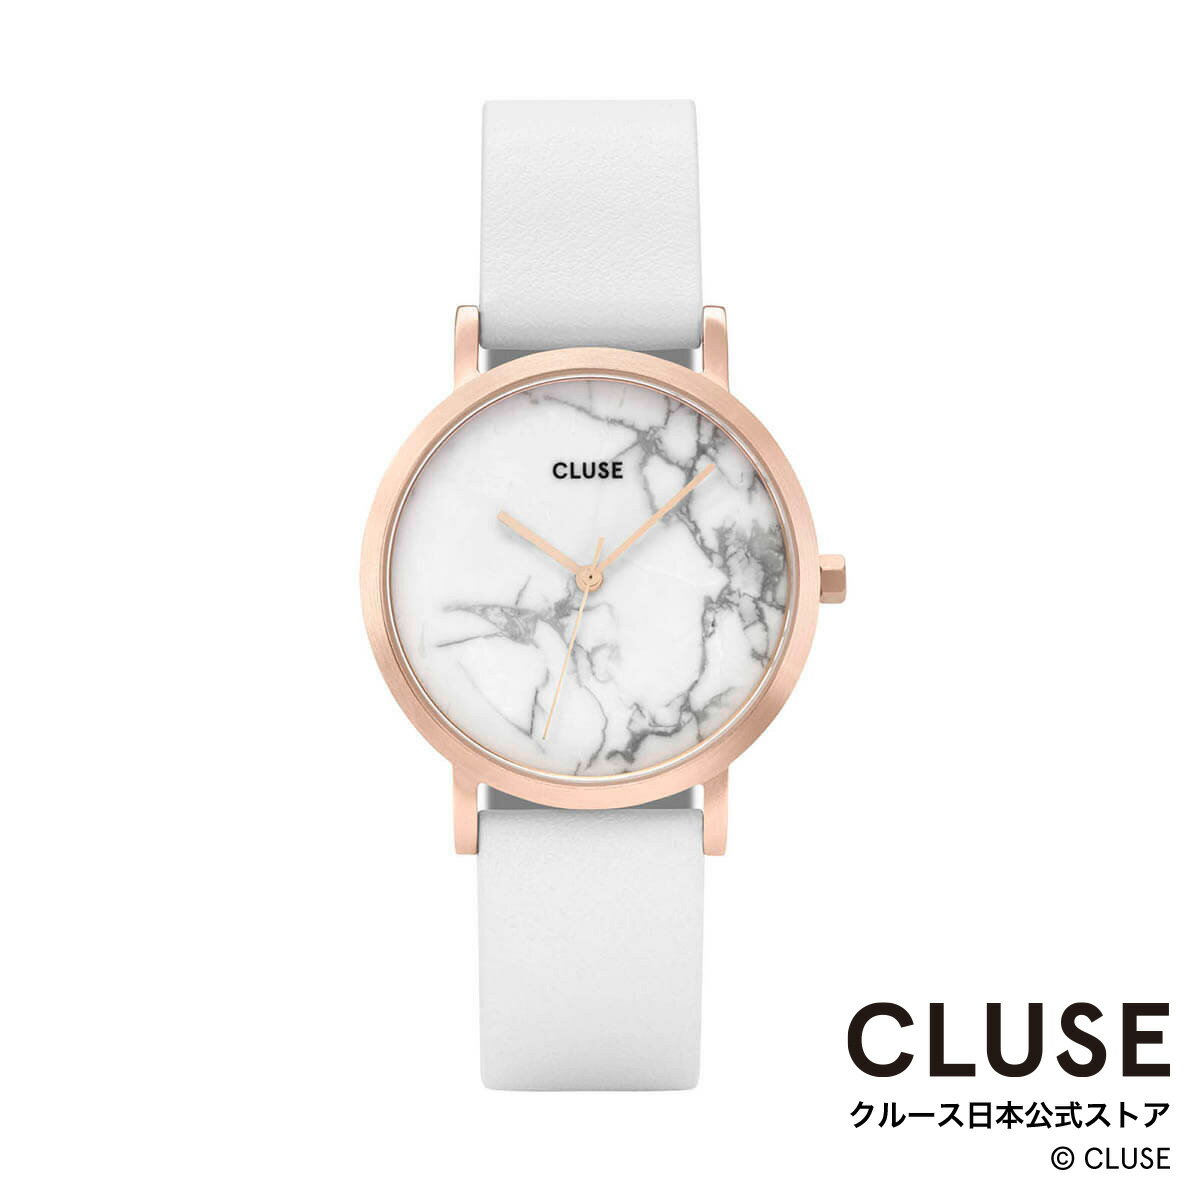 クルース ビジネス腕時計 レディース クルース CLUSE 日本公式ストア ラ・ロッシュ ペティット ローズゴールド ホワイト マーブル ホワイト レディース 女性 腕時計 時計 防水 クォーツ